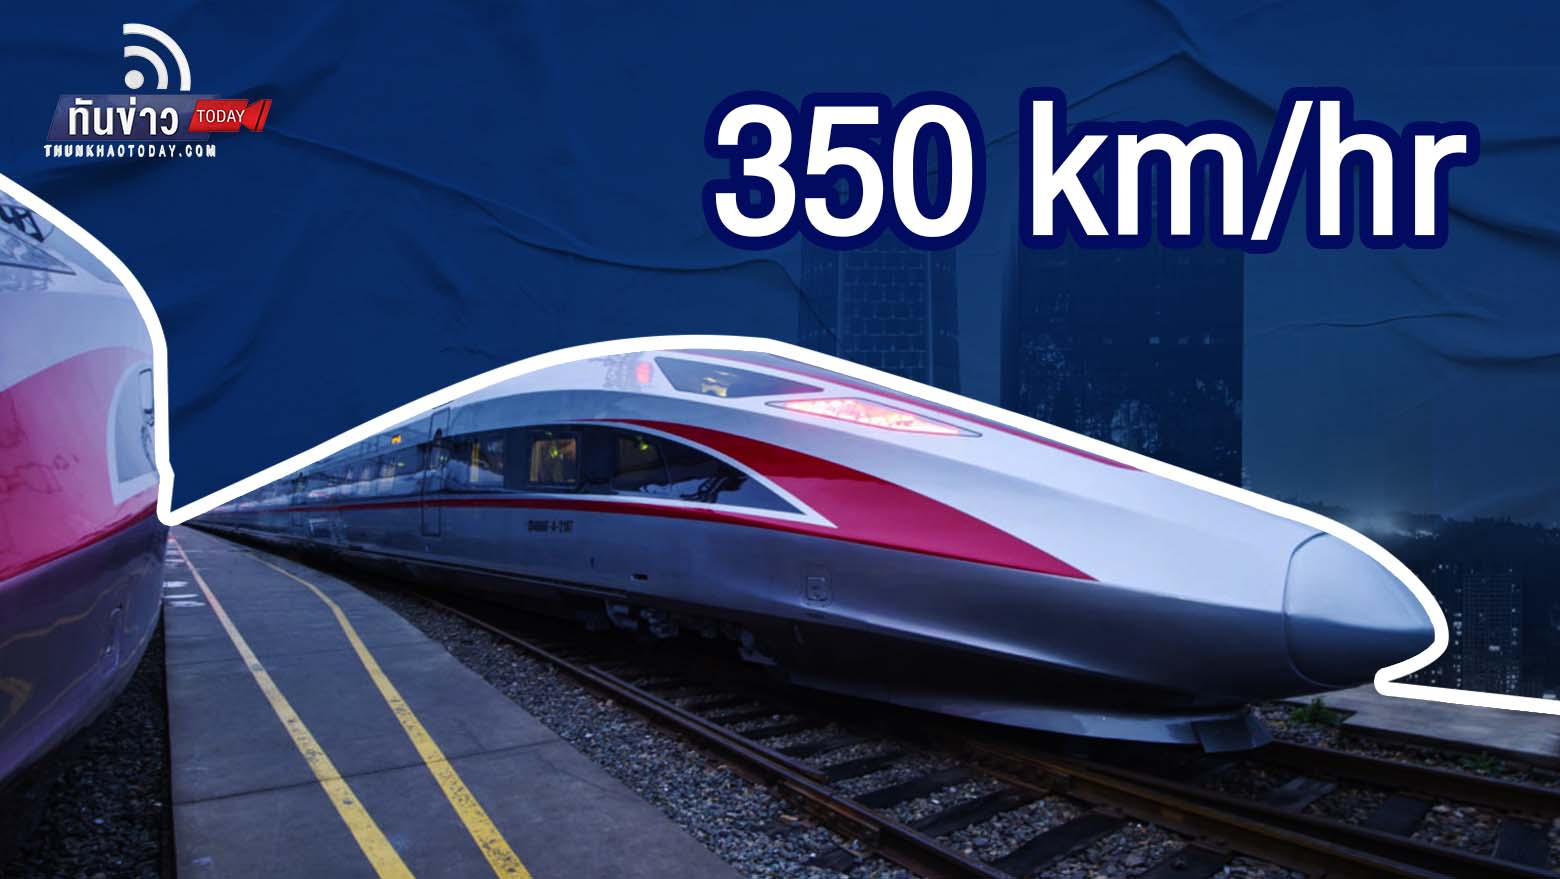 “อินโดนีเซีย เปิดตัวรถไฟความเร็วสูงขบวนแรก วิ่ง 350 กม./ชม.